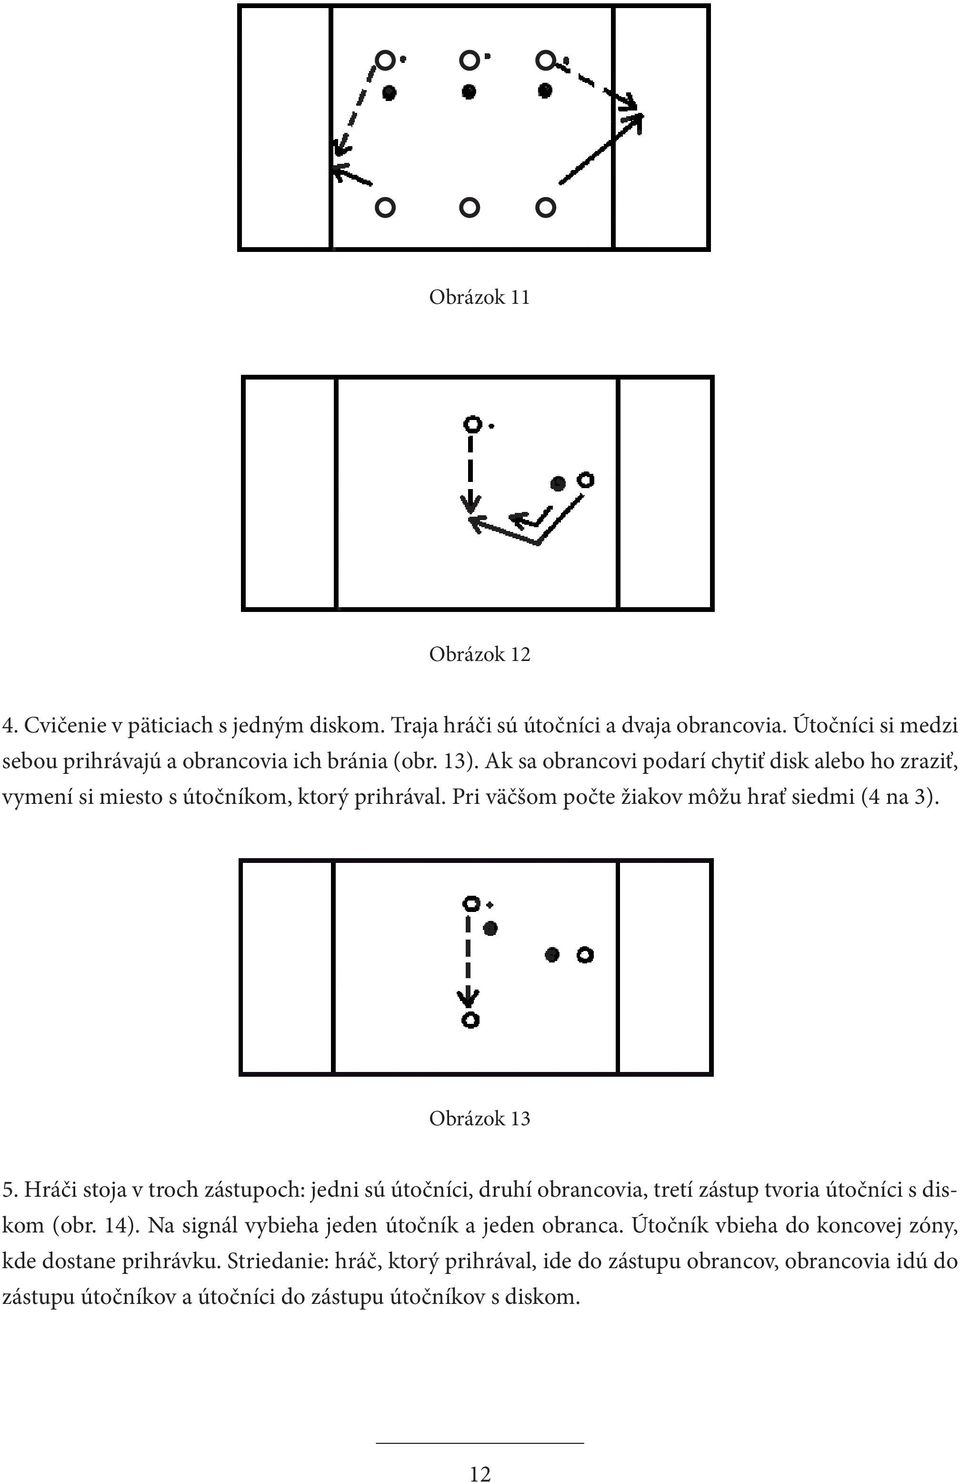 Hráči stoja v troch zástupoch: jedni sú útočníci, druhí obrancovia, tretí zástup tvoria útočníci s diskom (obr. 14). Na signál vybieha jeden útočník a jeden obranca.